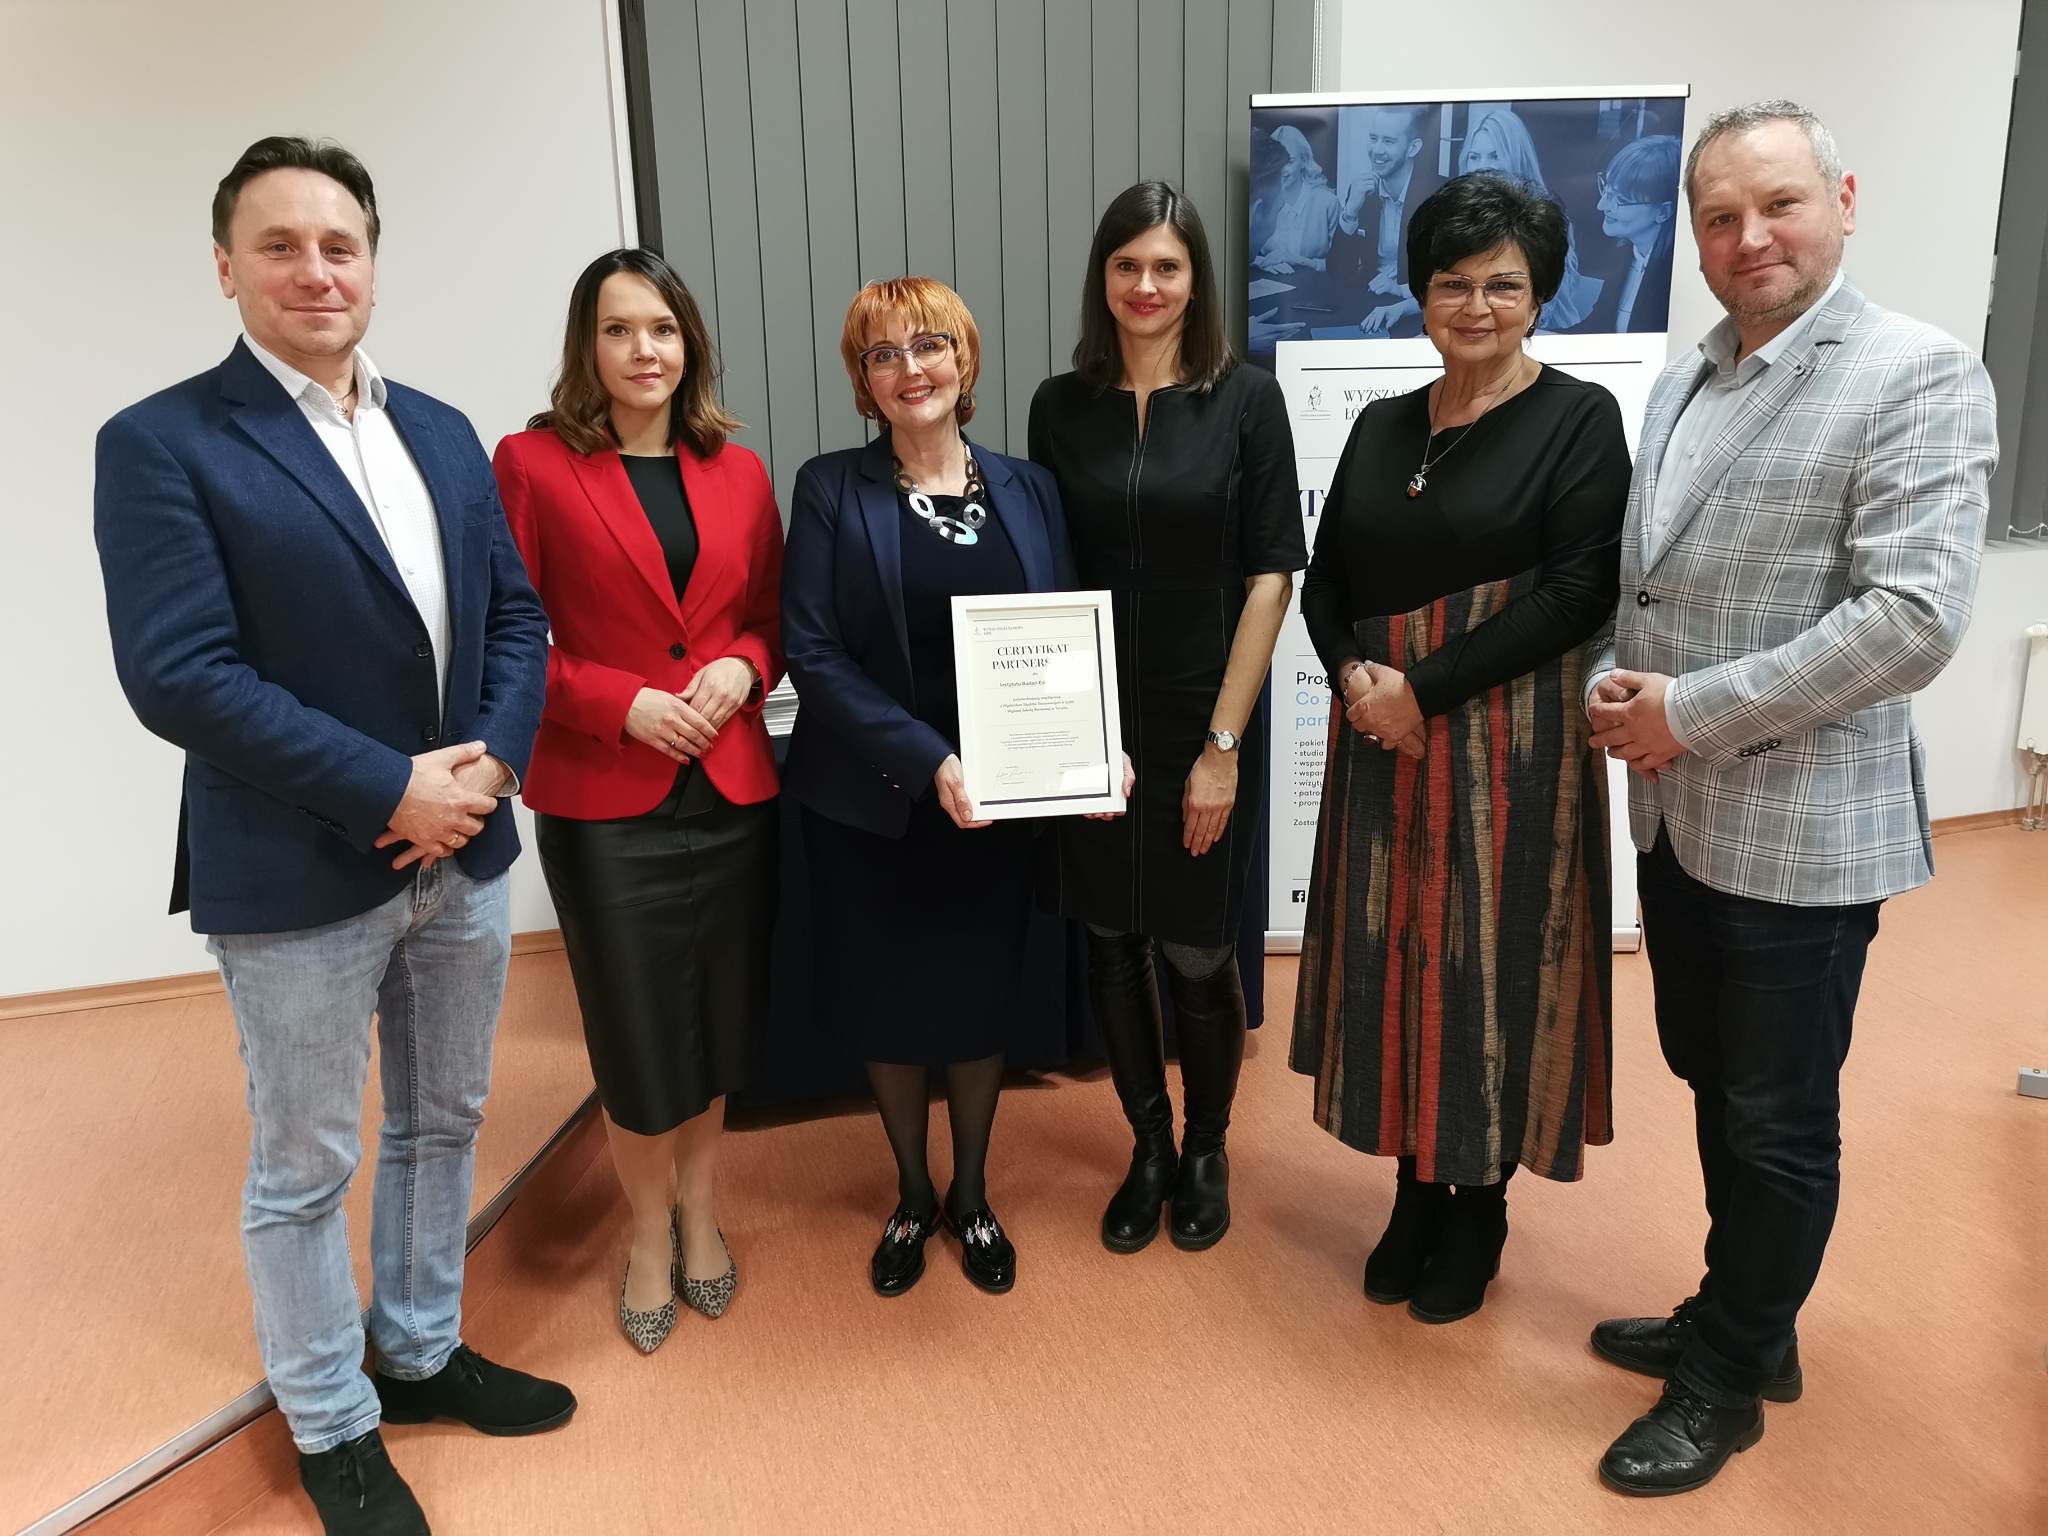 Regionalni liderzy ds. ZSK z województwa łódzkiego odebrali Certyfikat Partnerstwa